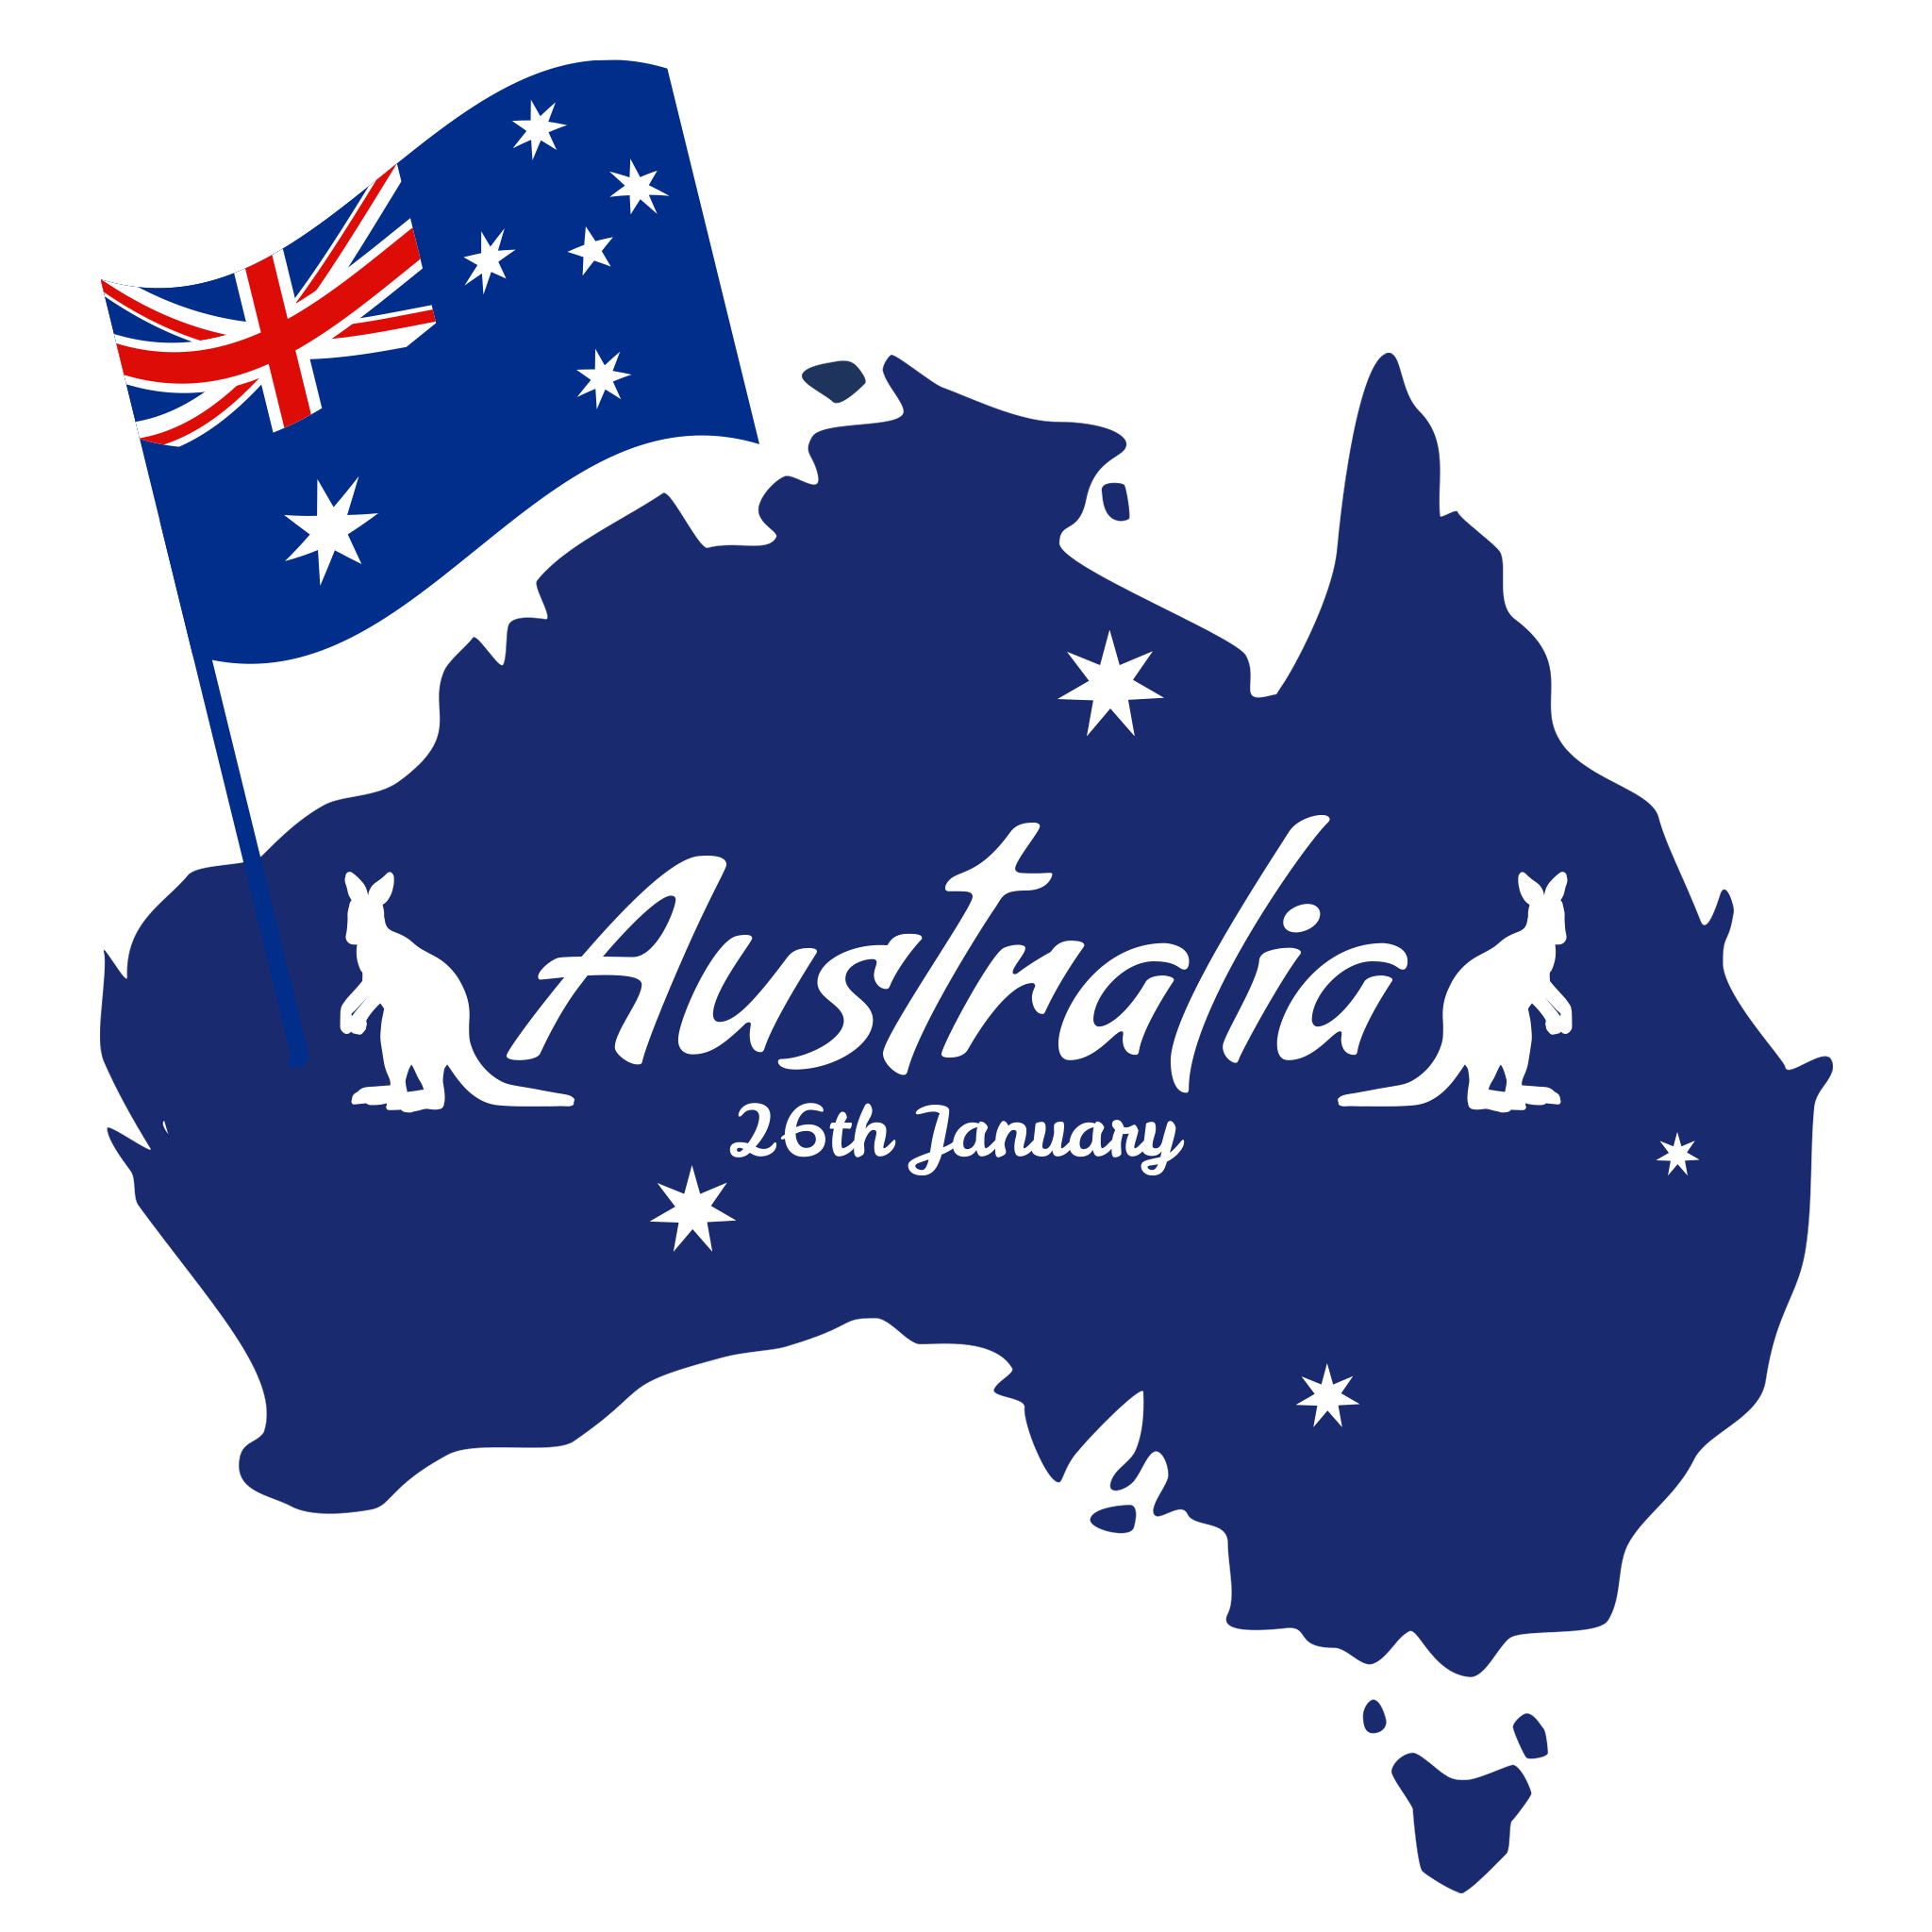 Cricket Australia logo landscape transparent PNG - StickPNG